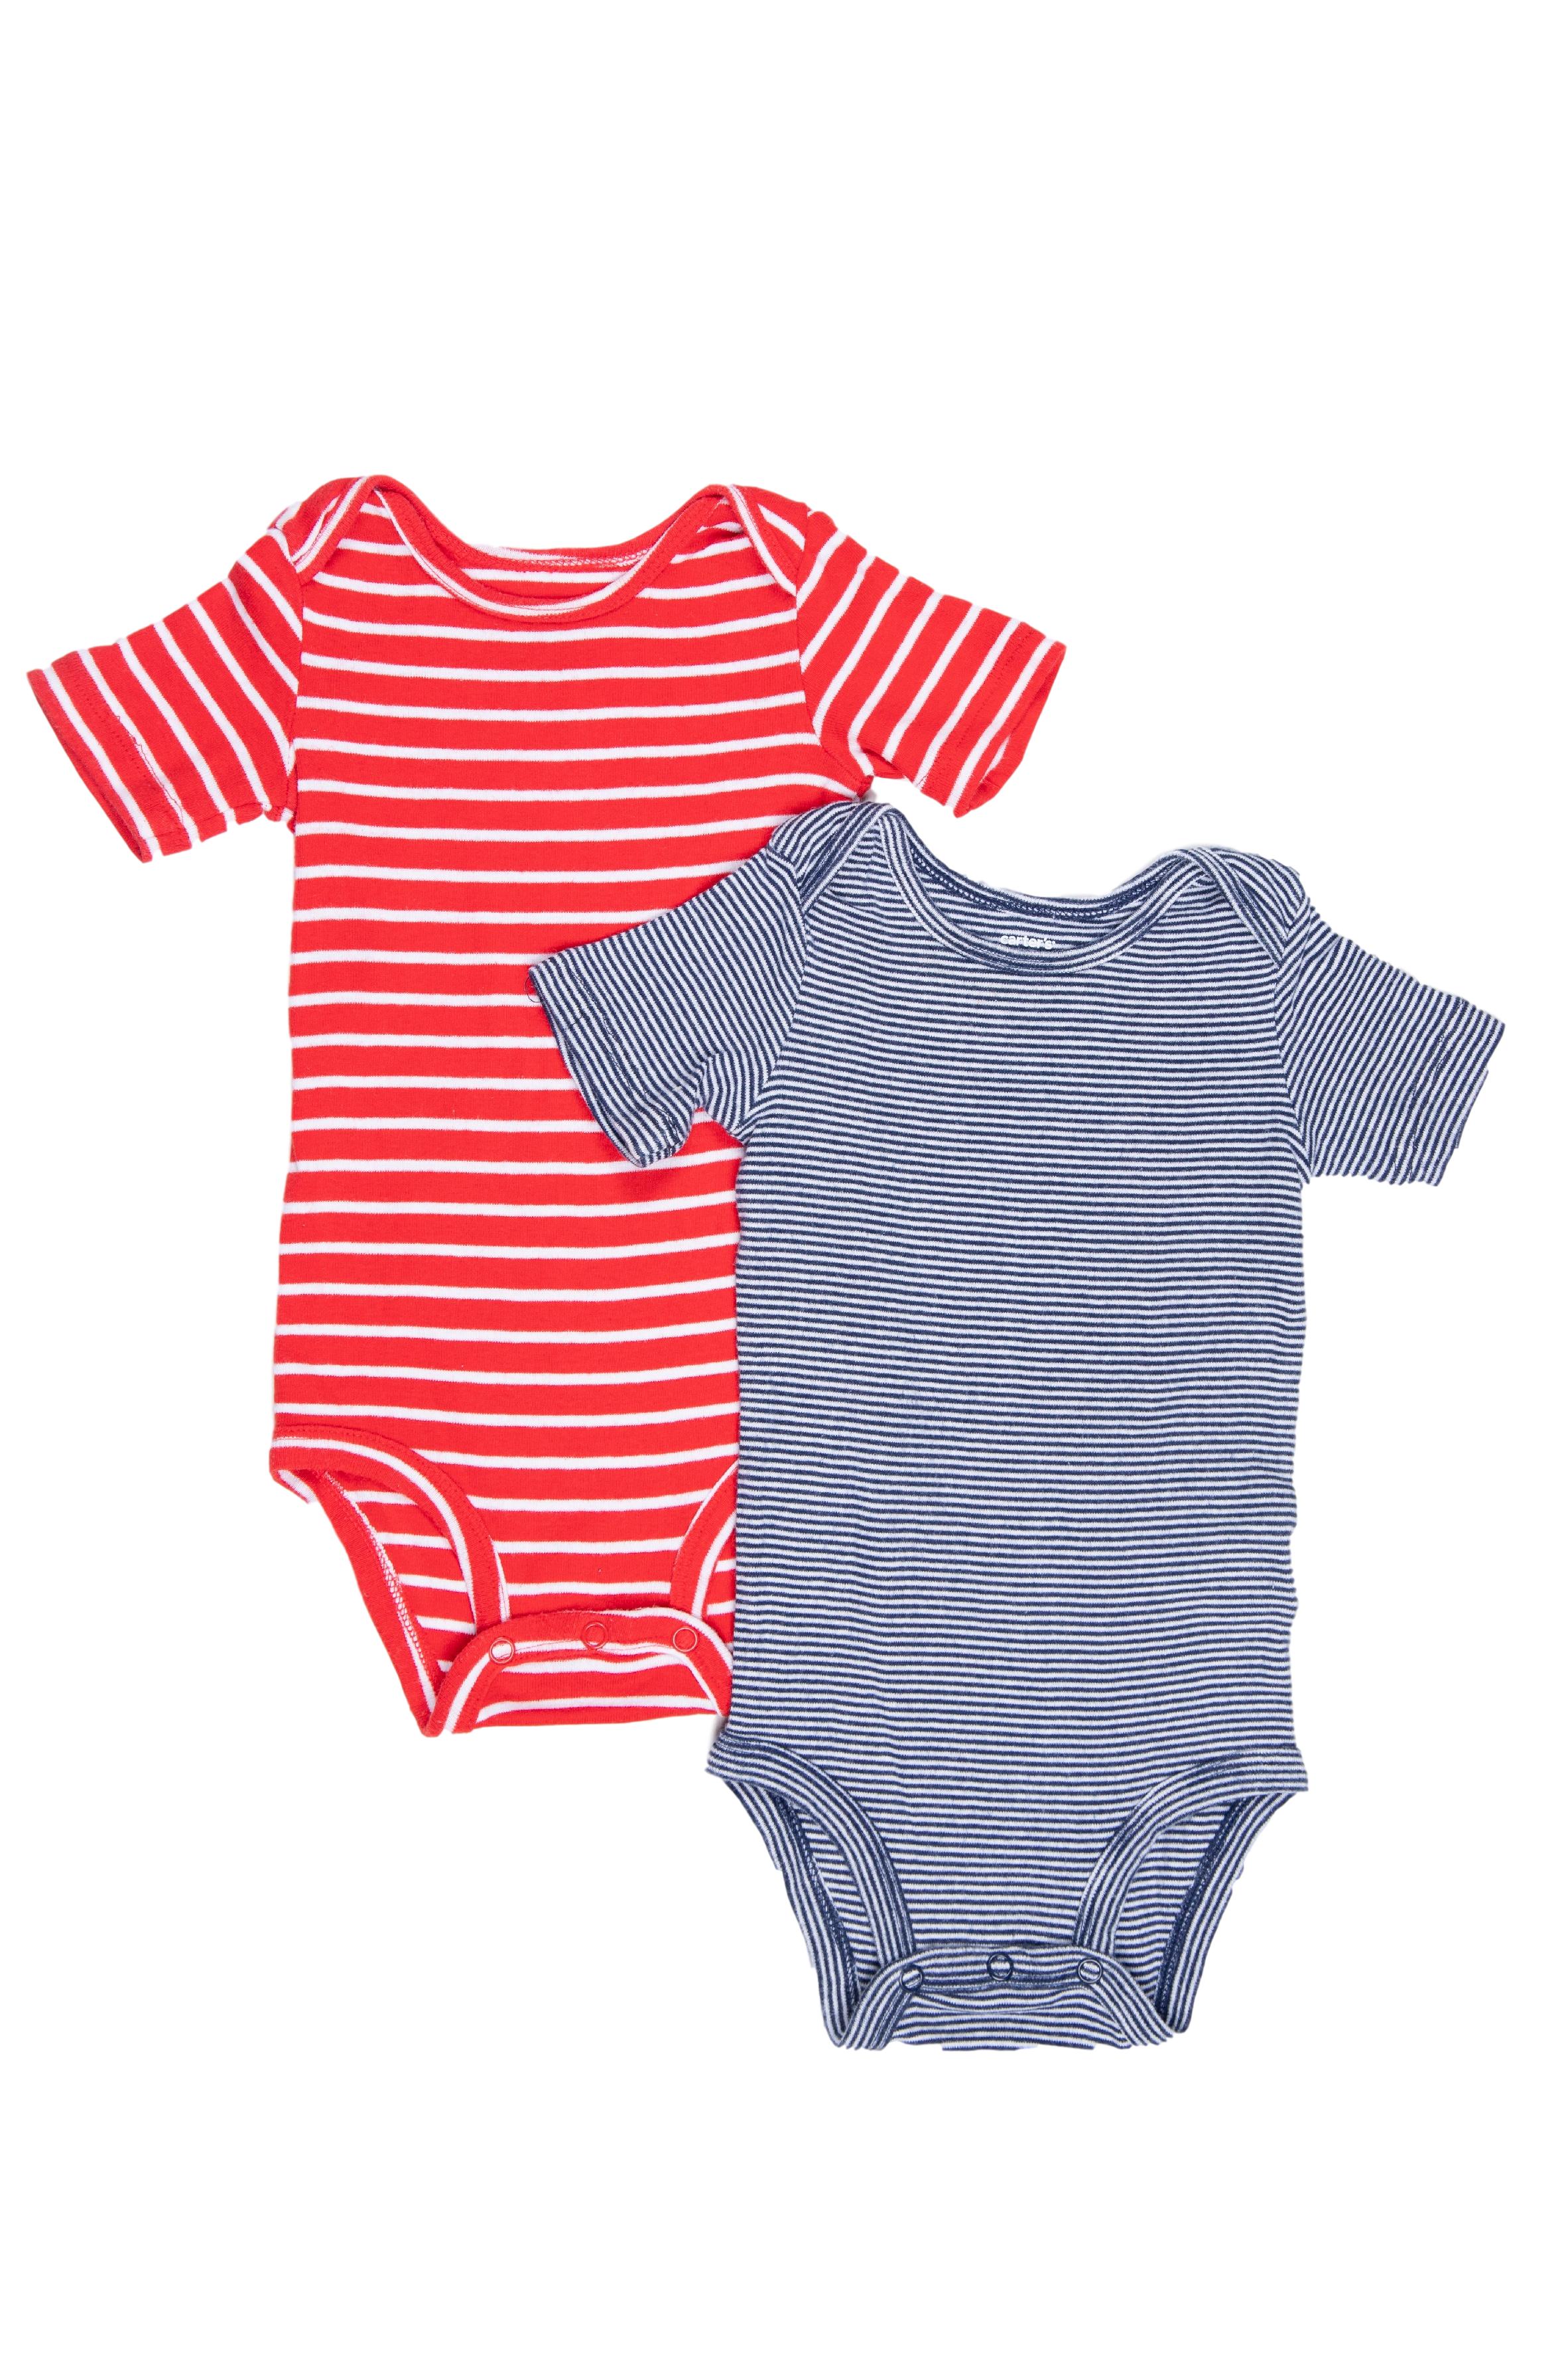 Pack 2 bodies uno rojo y otro azul a rayas. ambos 100% algodón. dice talla (m en etiqueta pero son grandes, puede dar hasta 15 - 18 meses) - Carter's